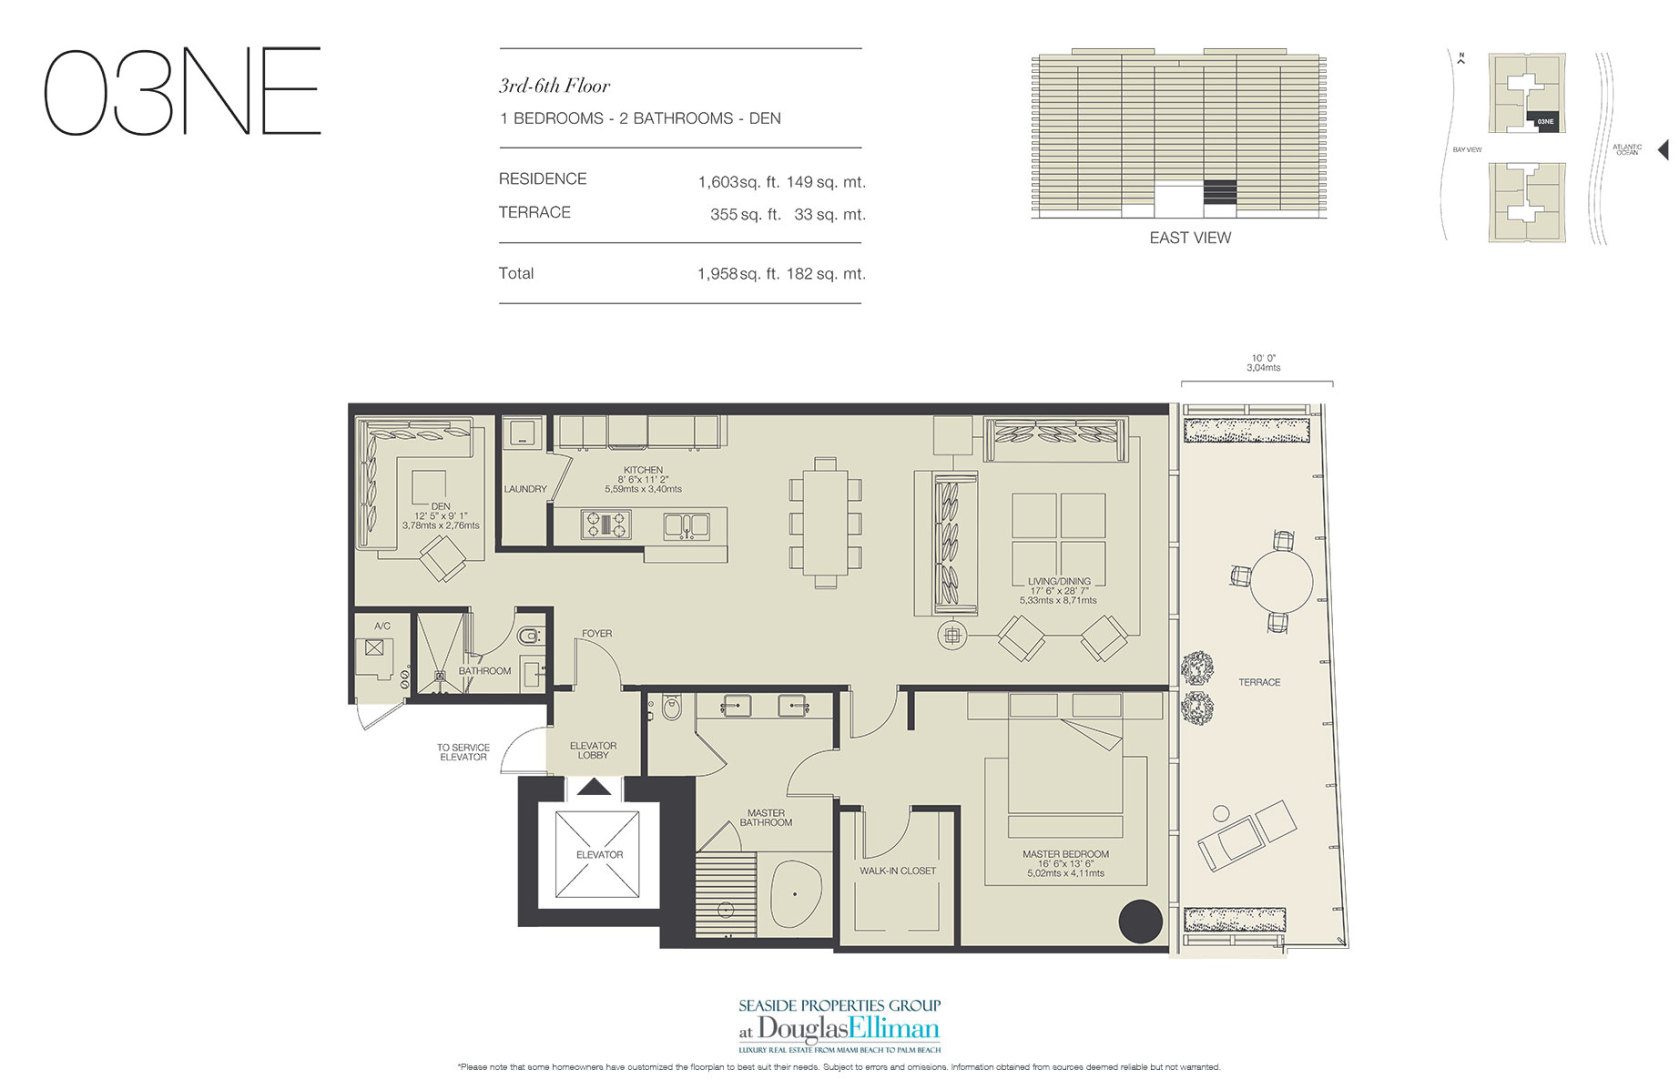 The 03NE Floorplan for Oceana Bal Harbour, Luxury Oceanfront Condos in Bal Harbour, Florida 33154